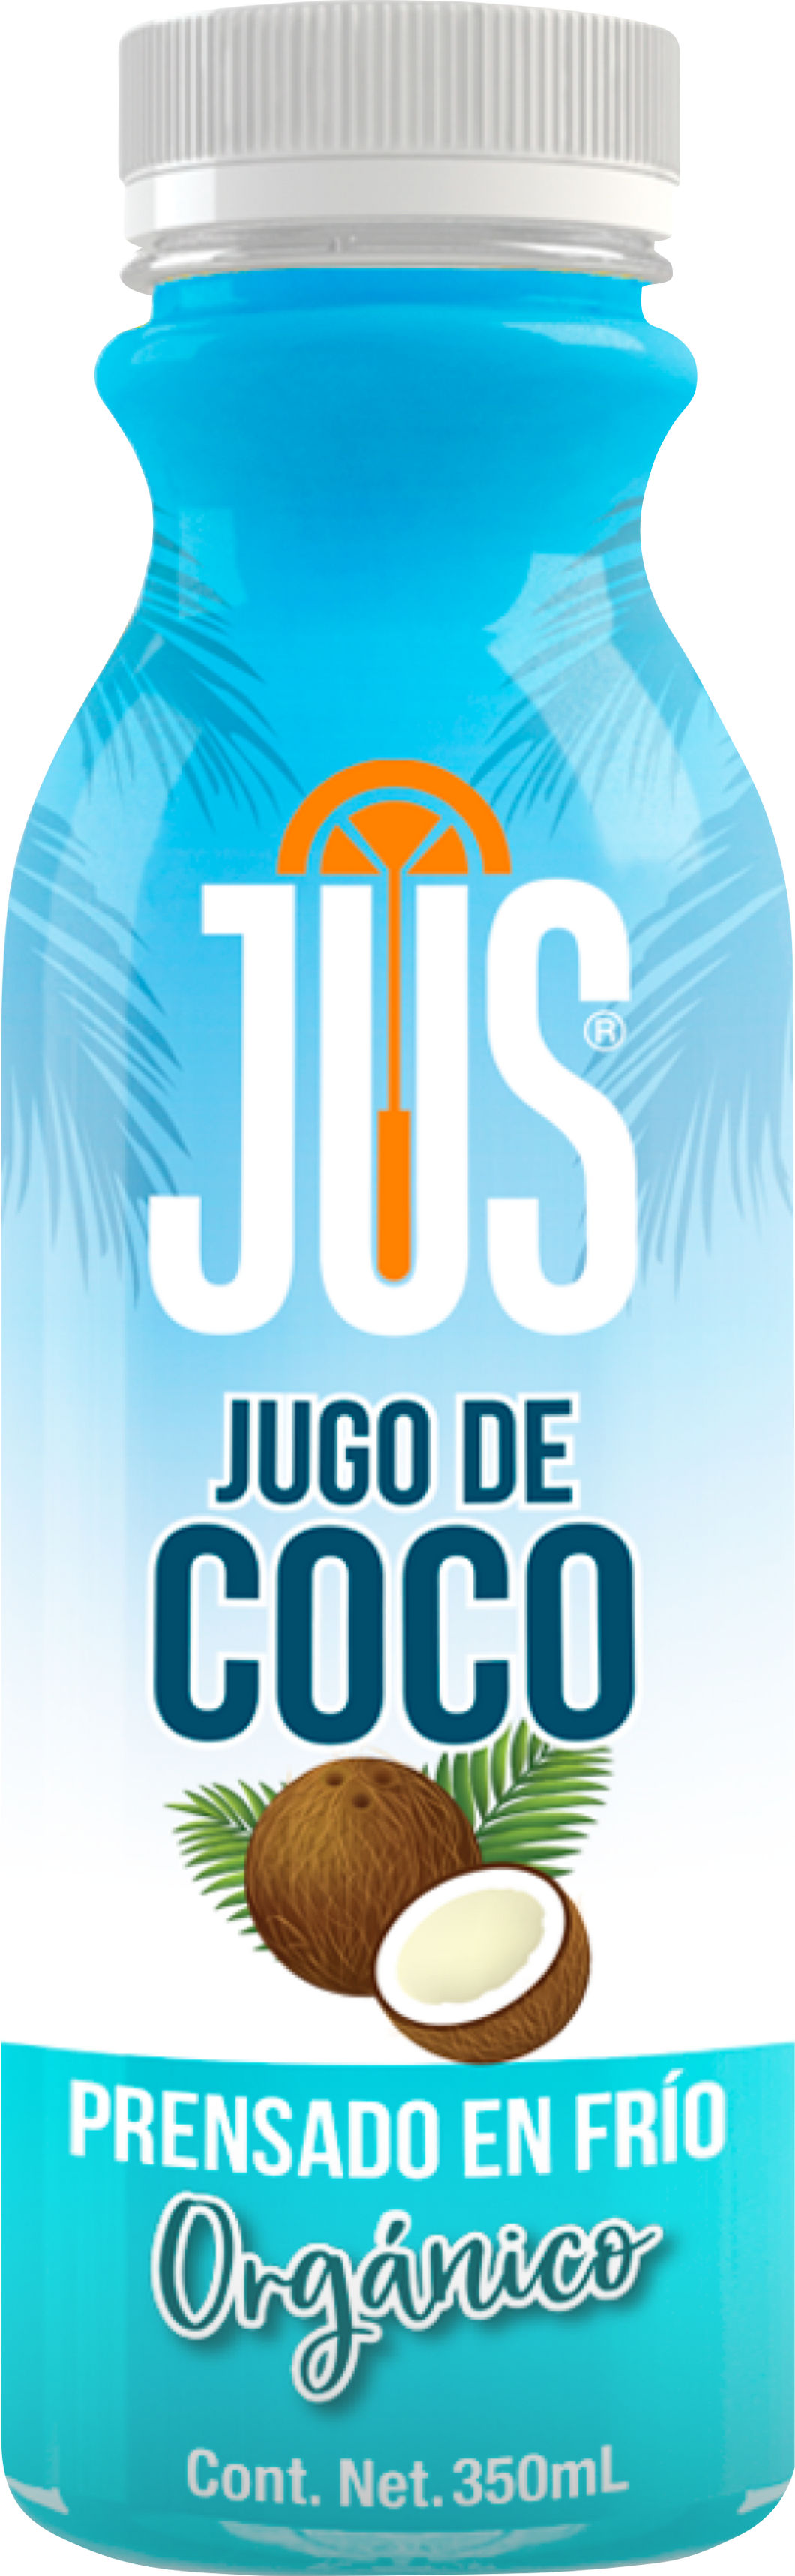 Coco Orgánico - Naturalmente rehidratante y vigorizante.